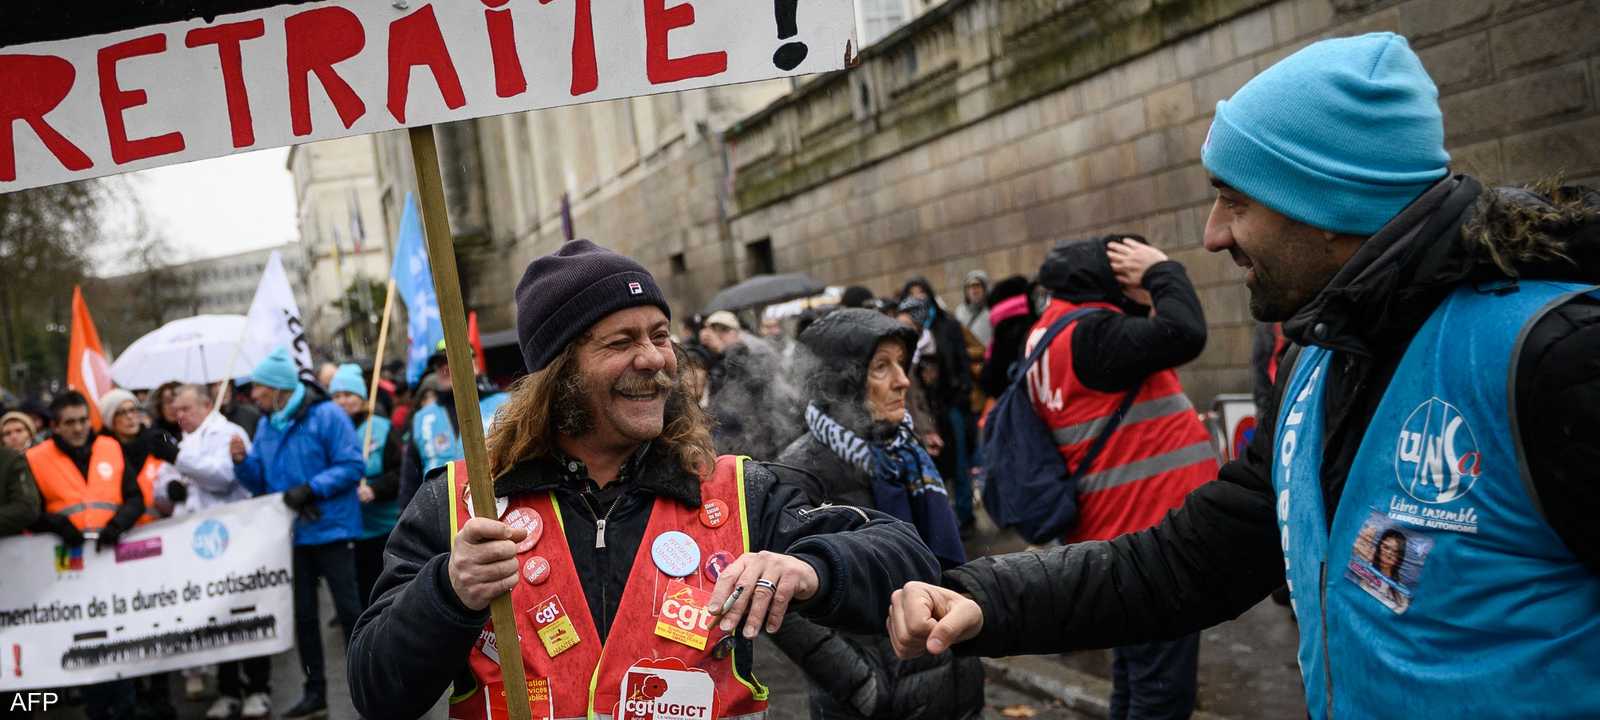 احتجاجات في فرنسا ضد رفع سن التقاعد